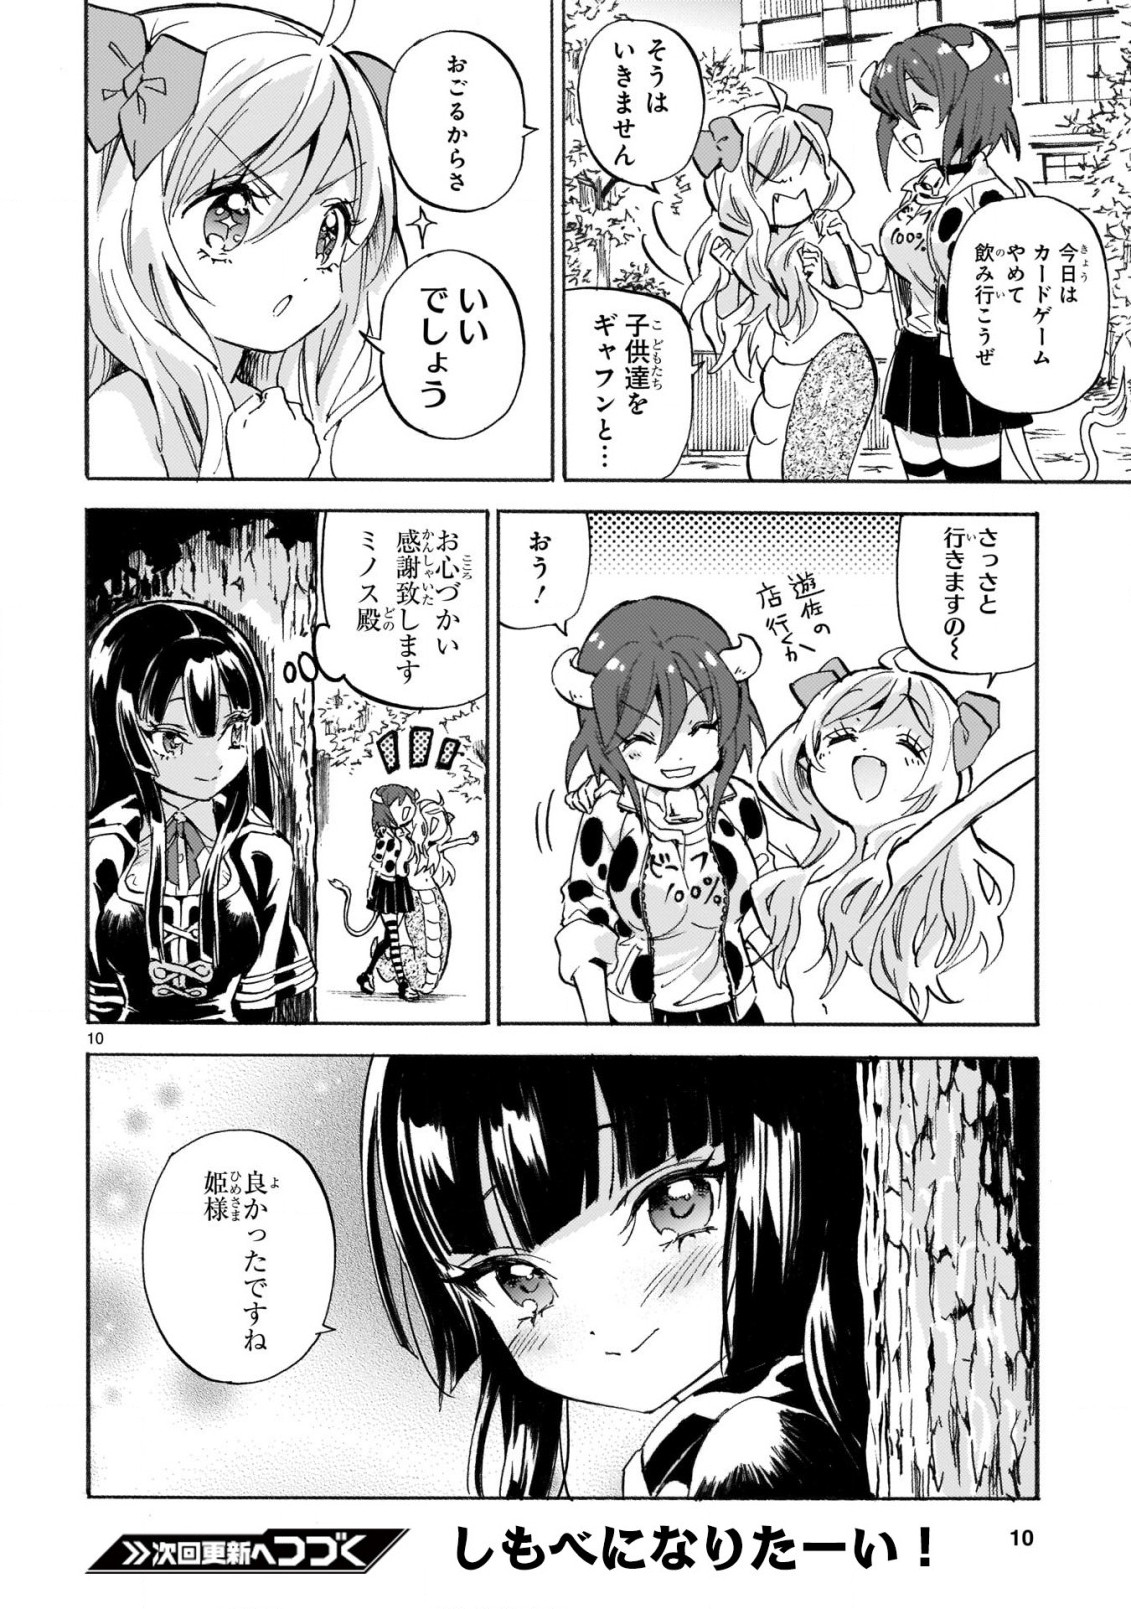 Jashin-chan Dropkick - Chapter 221 - Page 10